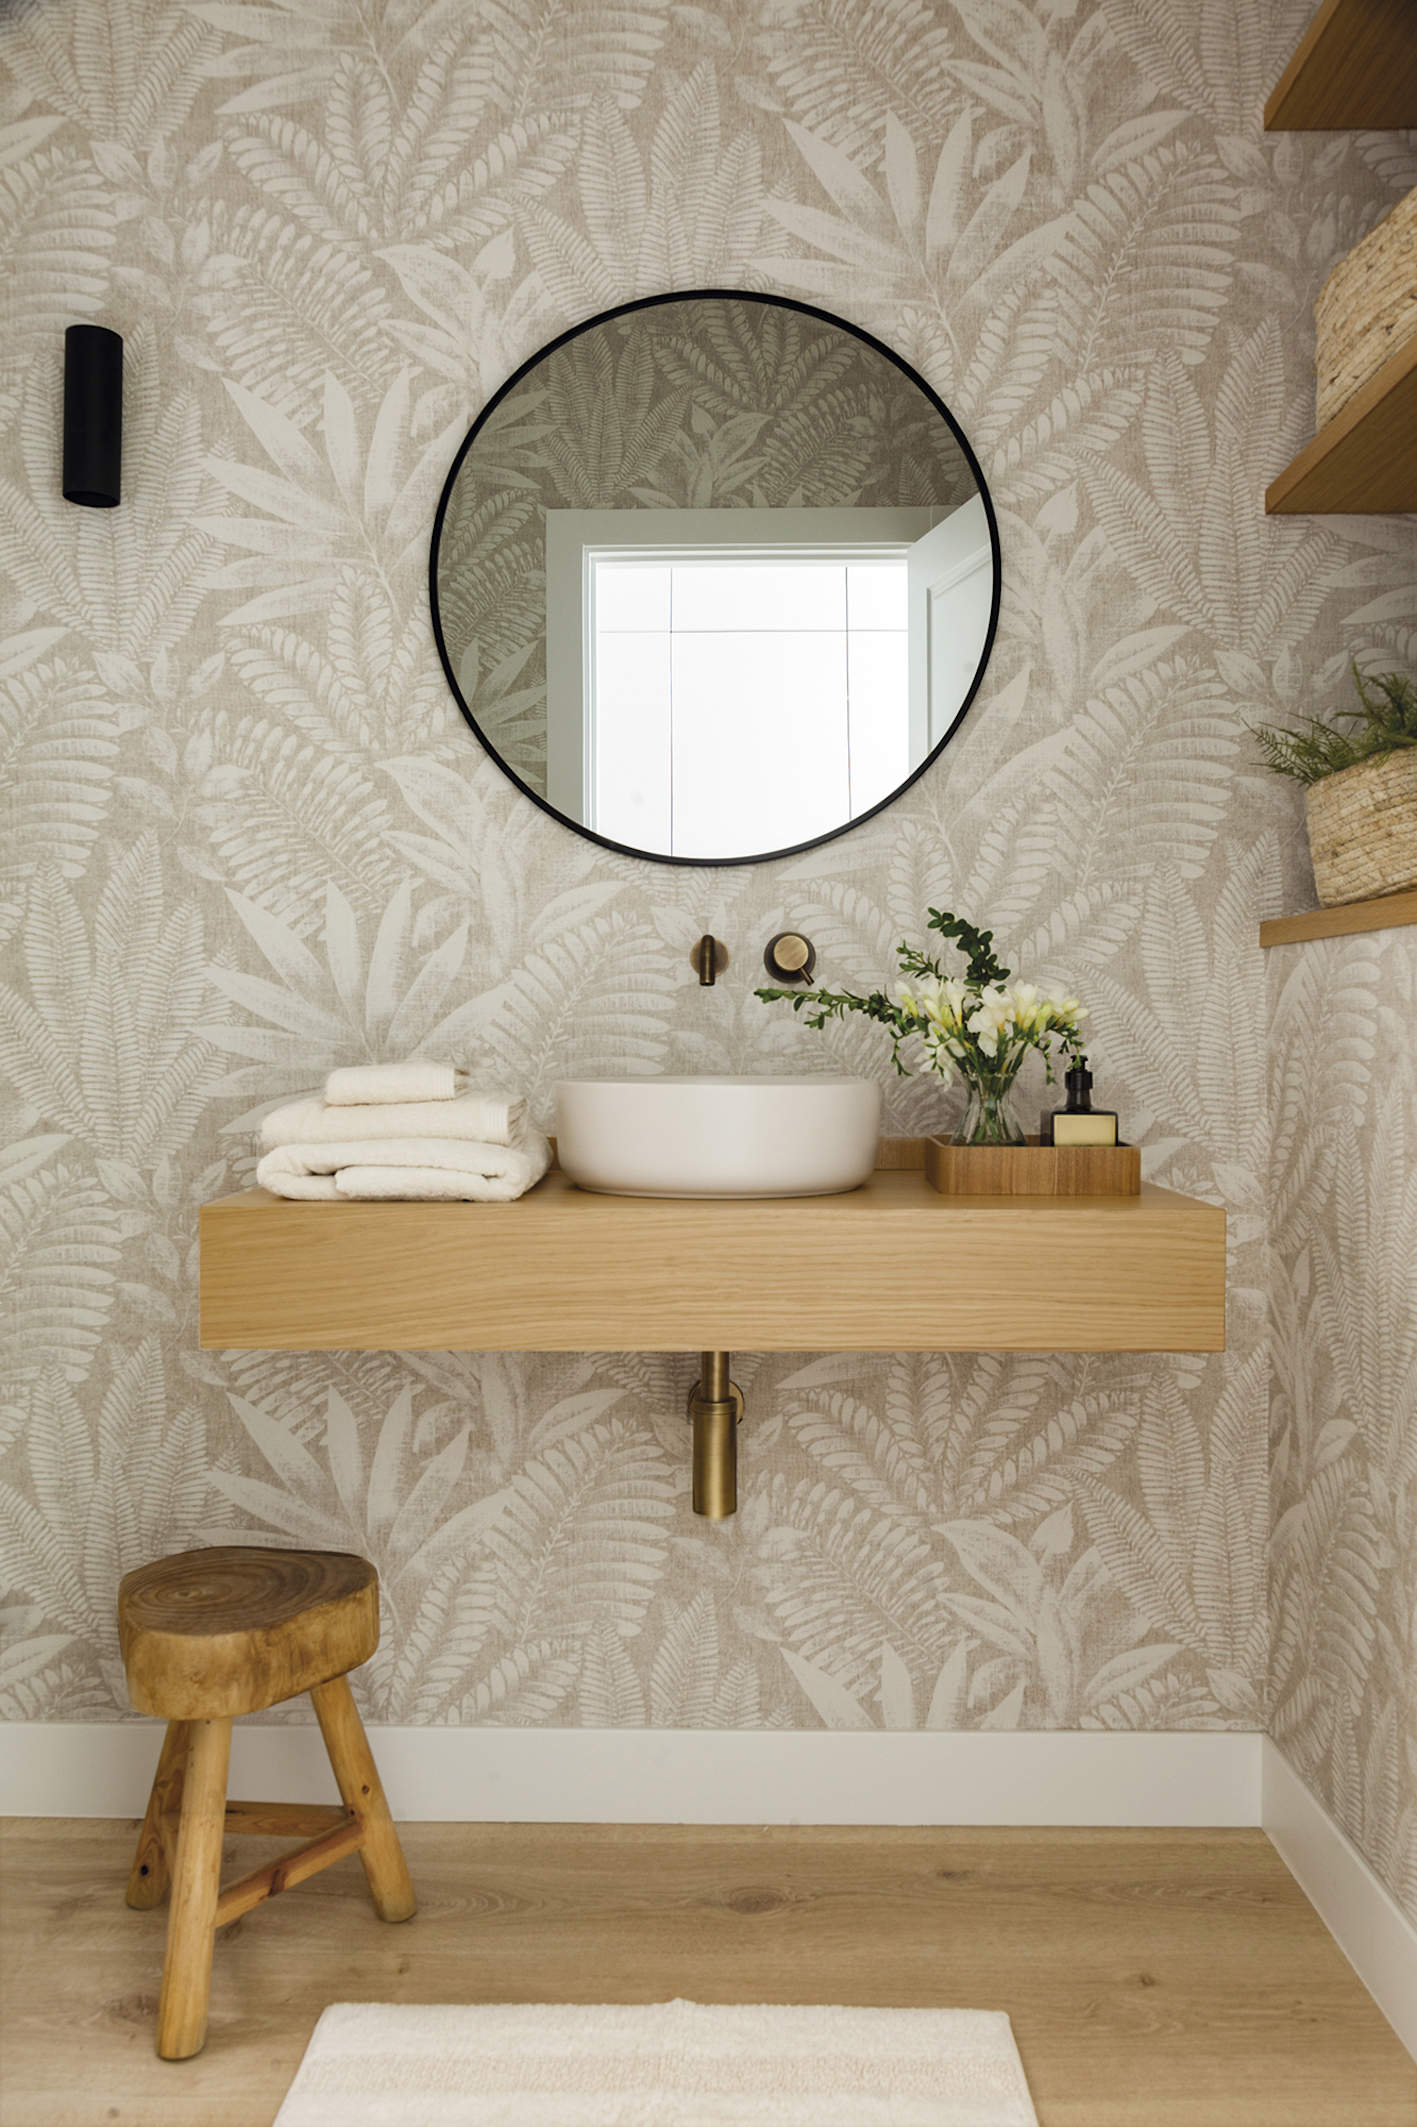 Baño con papel pintado, mueble de madera y taburete. Espejo, redondo. 